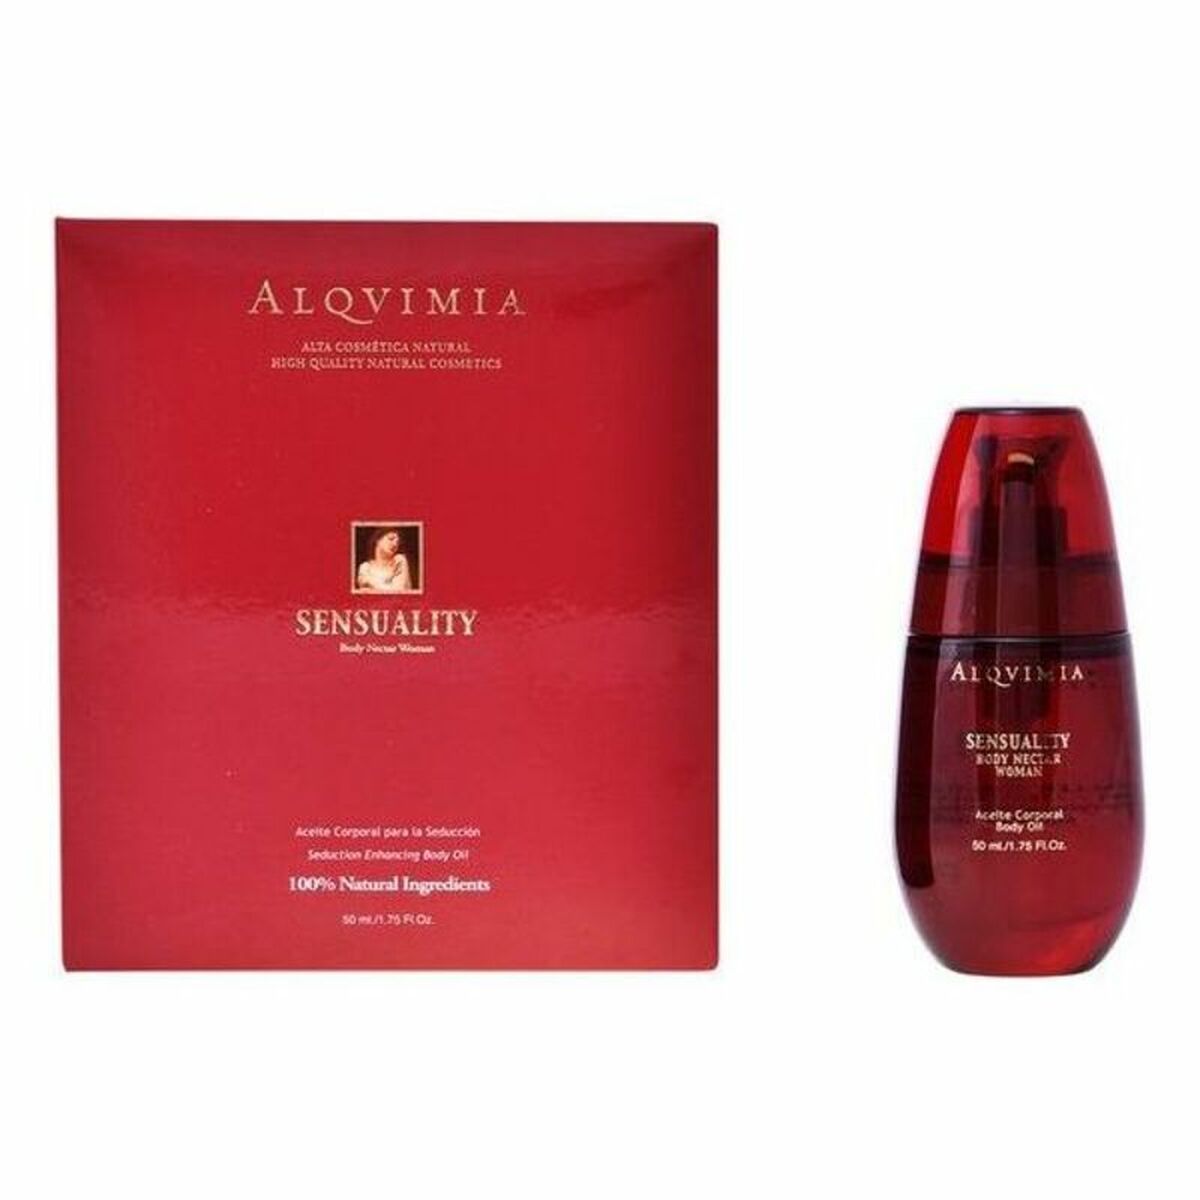 Kaufe Körperöl Sensuality Body Nectar Alqvimia 50 ml bei AWK Flagship um € 146.00